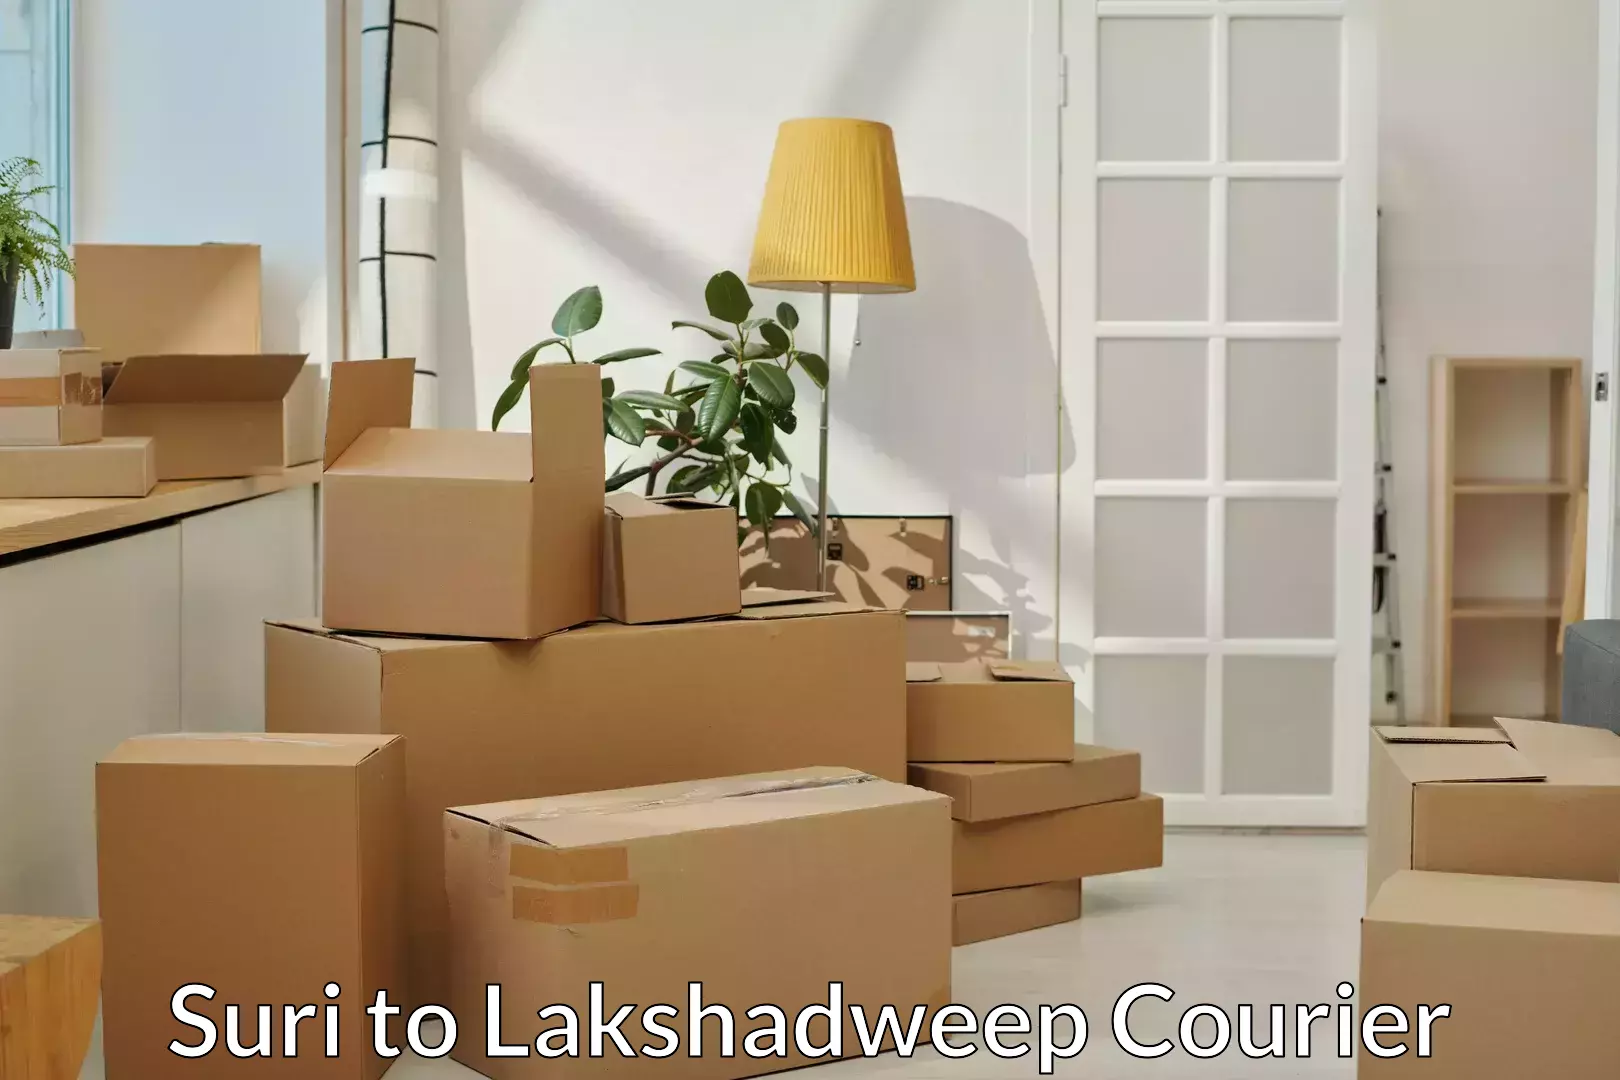 Furniture moving strategies Suri to Lakshadweep